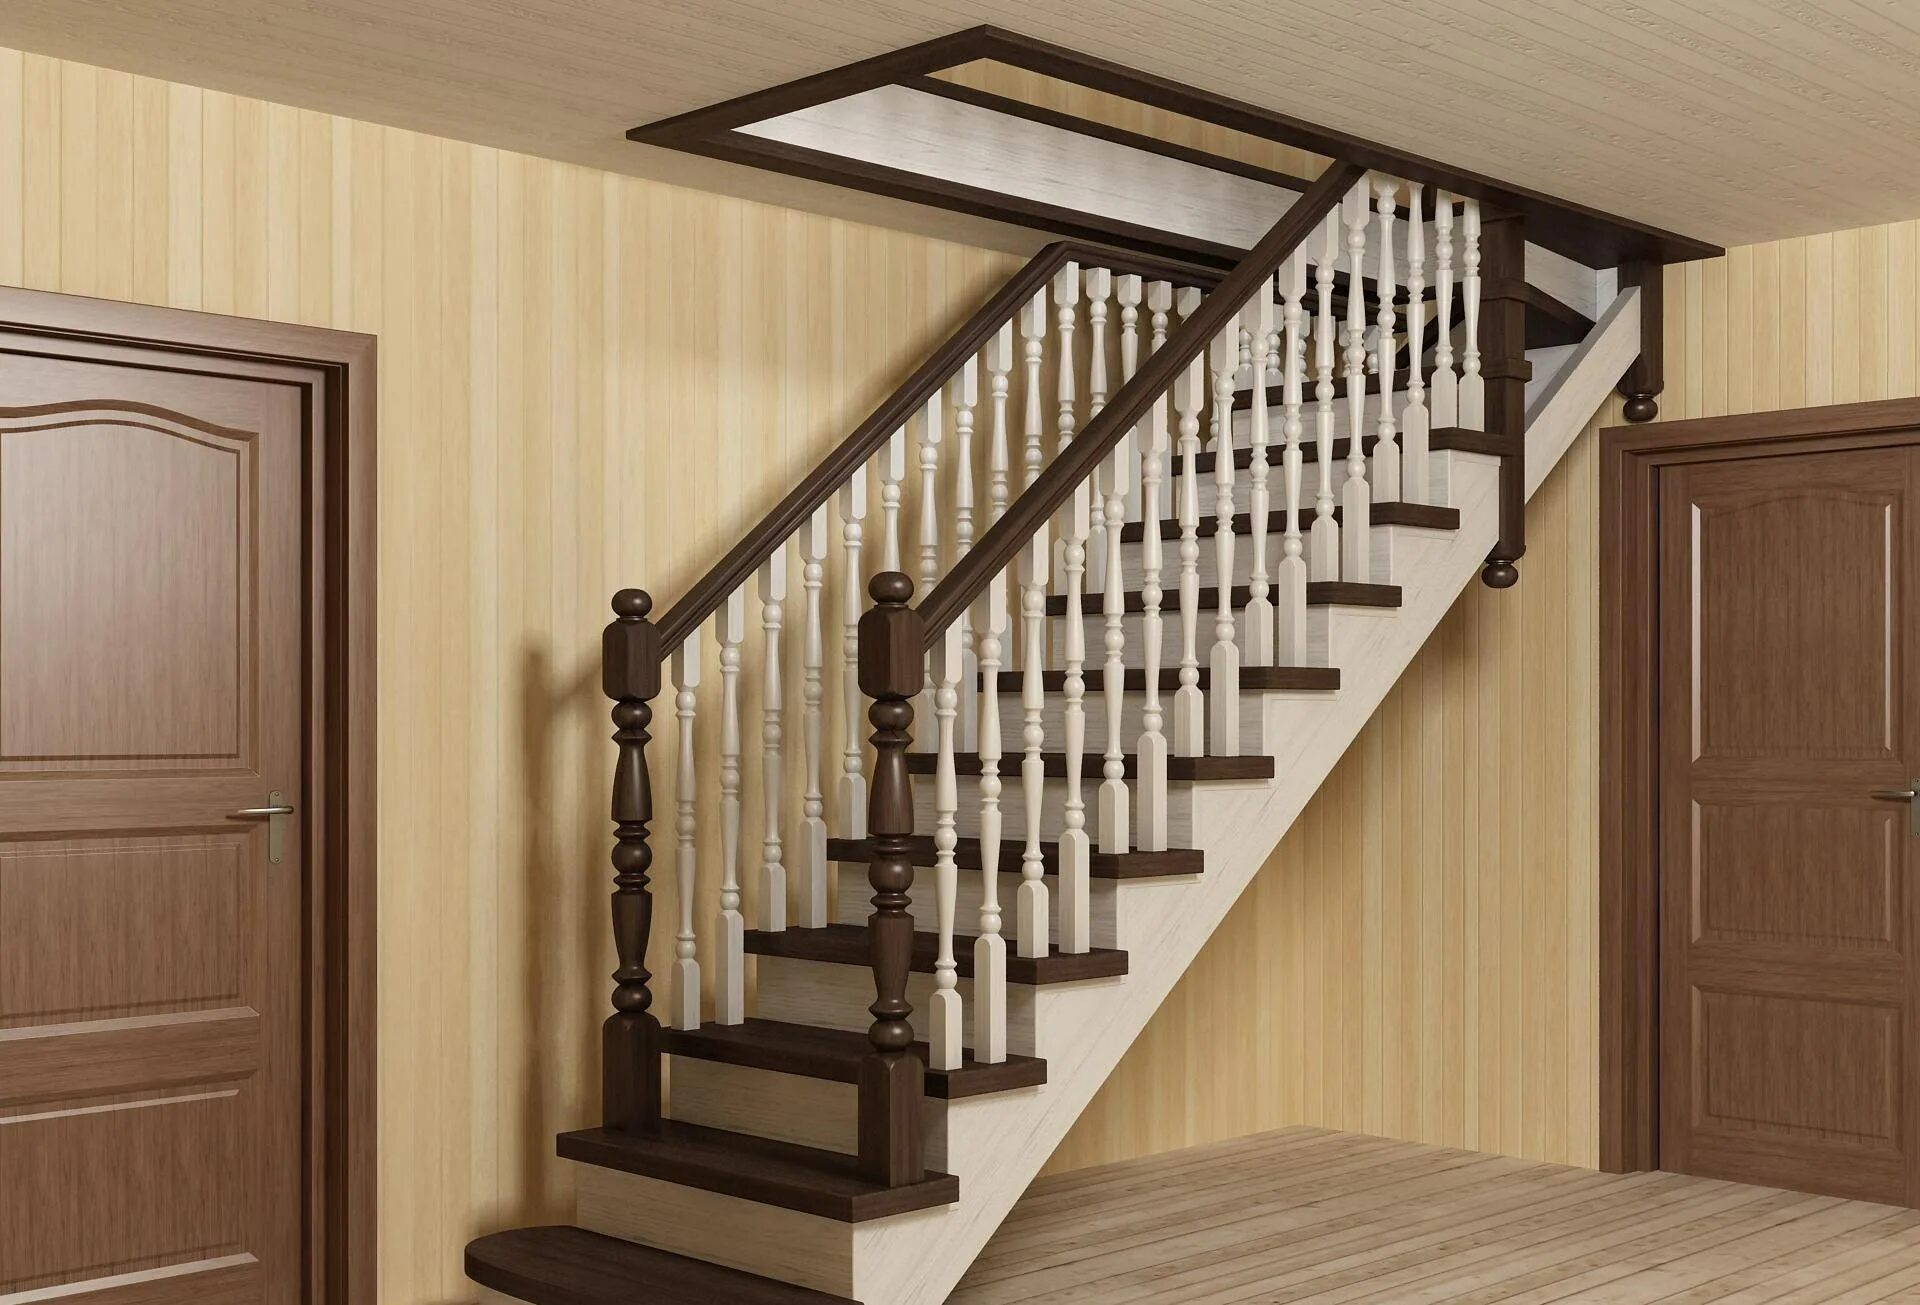 Найти лестницу на второй этаж. Одномаршевая лестница на 2 этаж. Лестница стандарт лм2 2400. Лестница в доме на второй этаж двухмаршевая. Лестница одномаршевая деревянная.